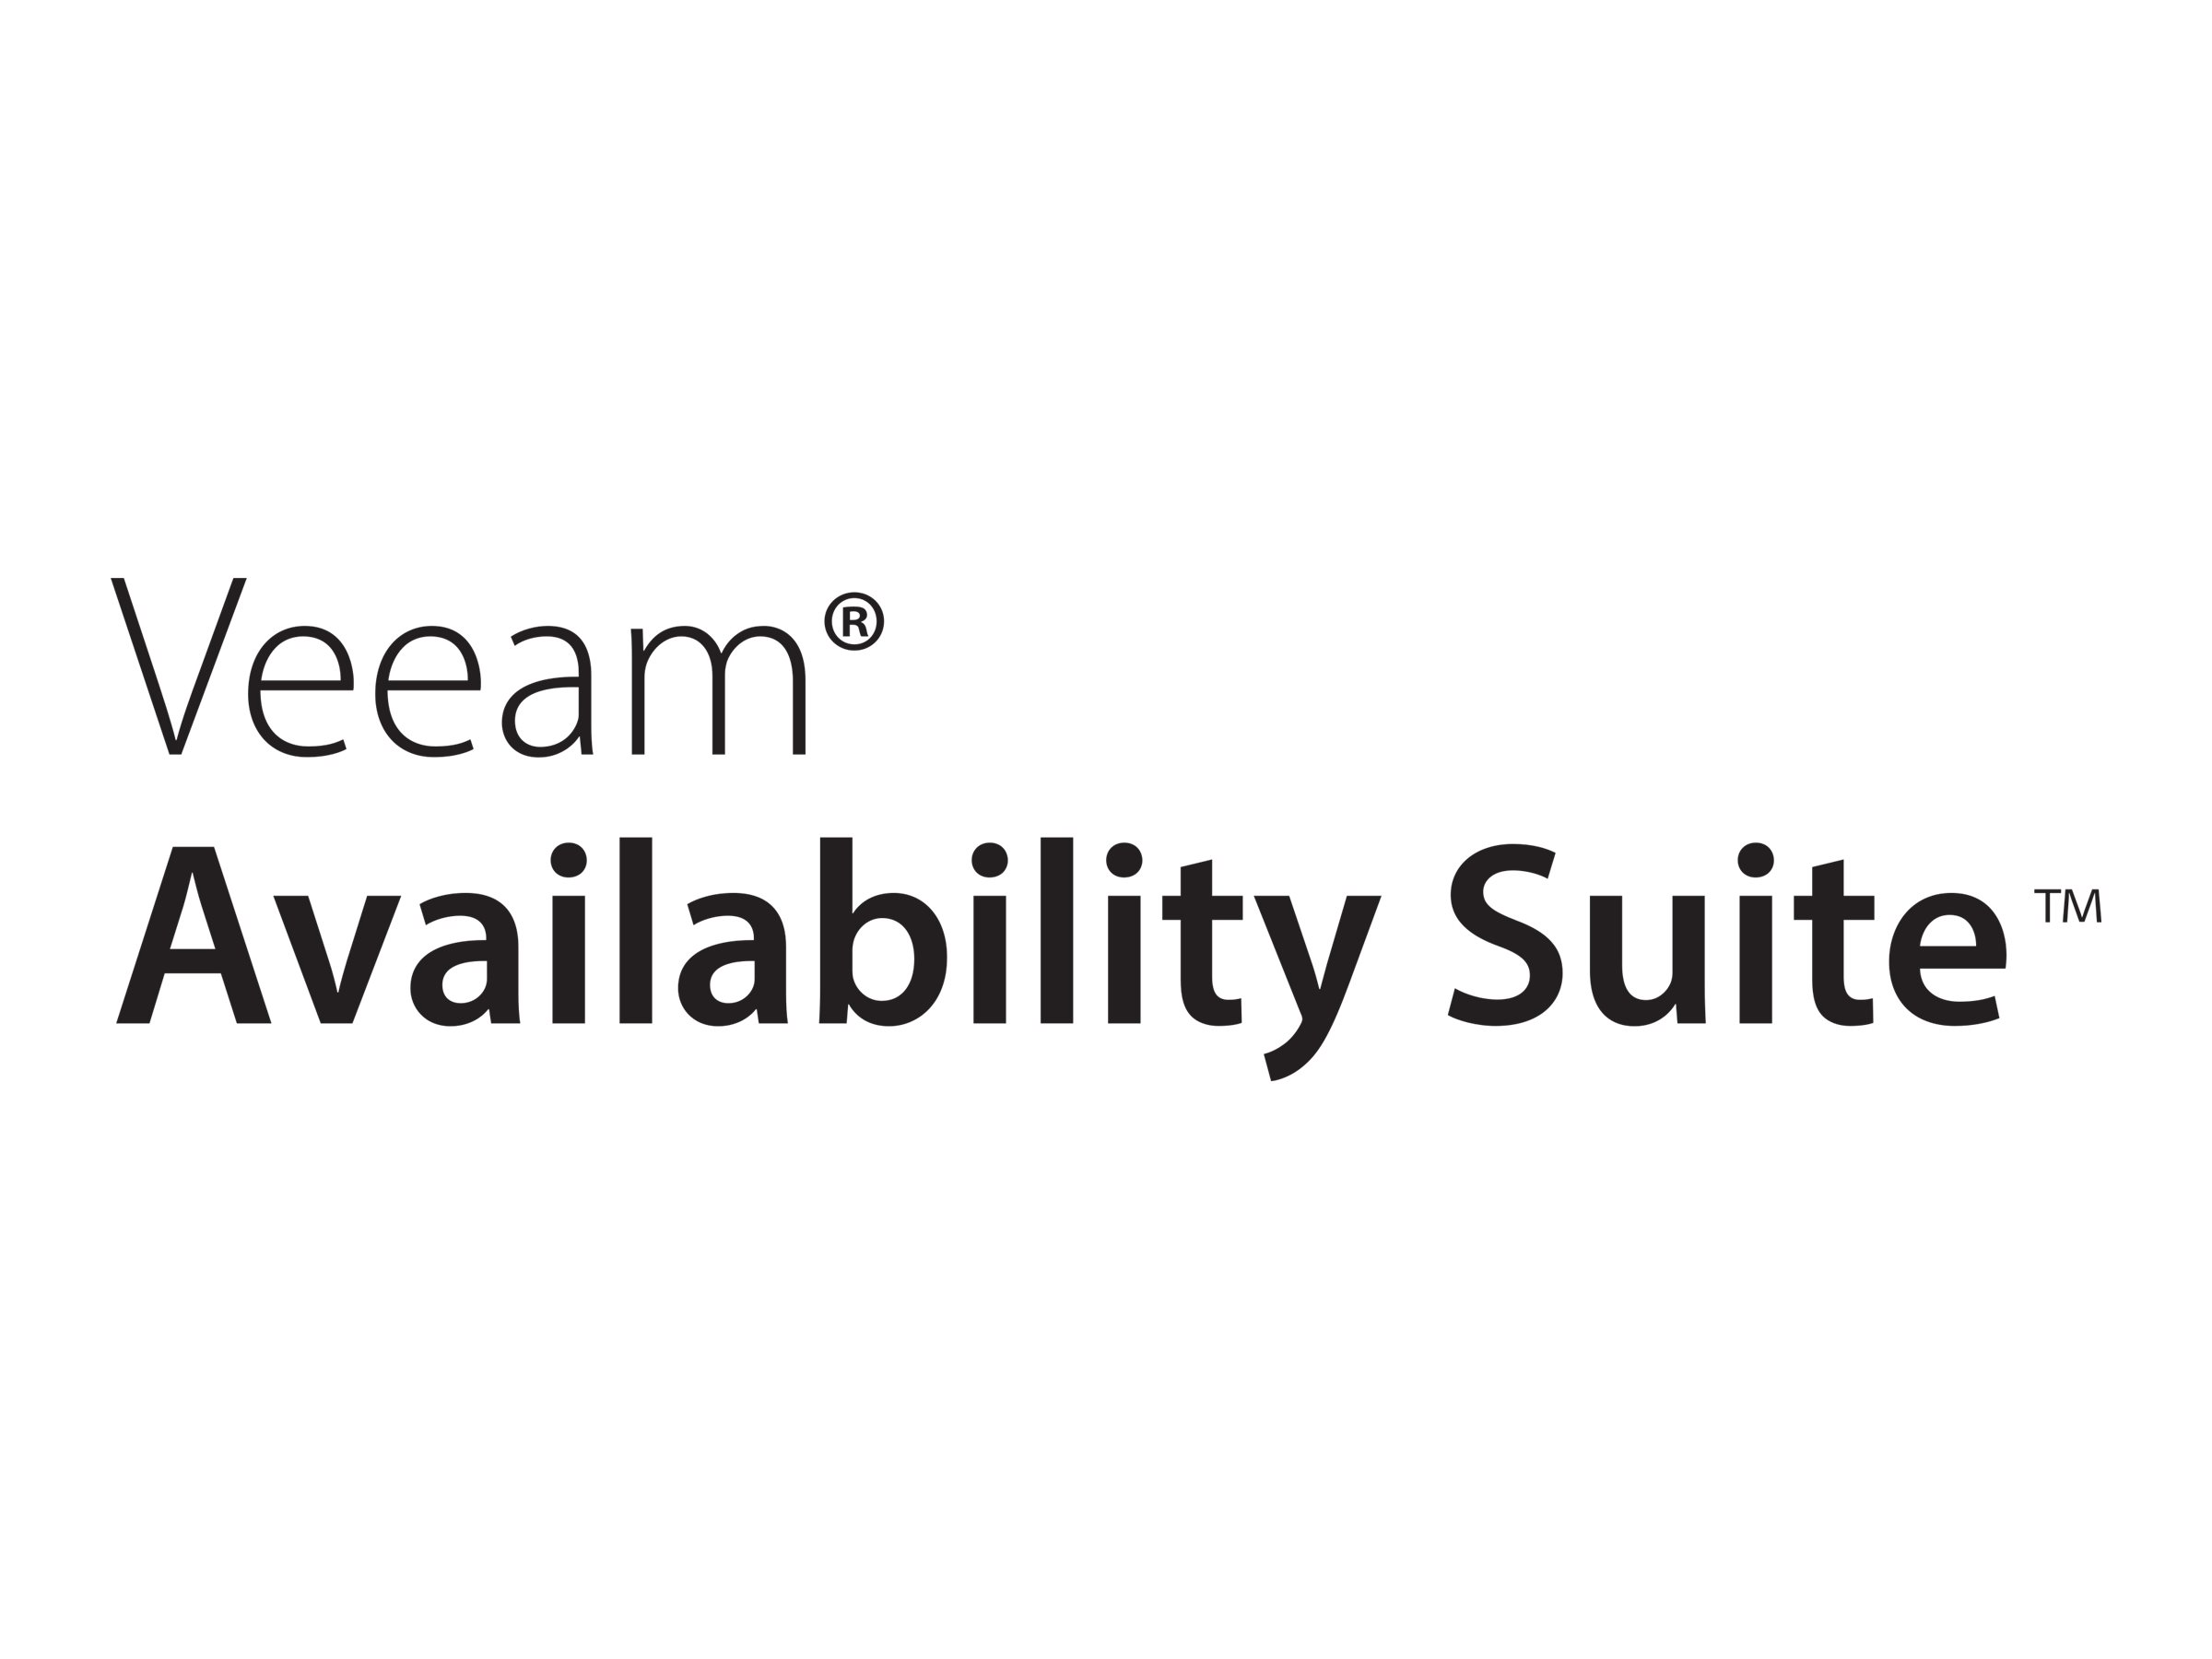 Veeam Availability Suite - Lizenz mit Vorauszahlung (5 Jahre) + Production Support - 1 Anschluss - akademisch, fixed